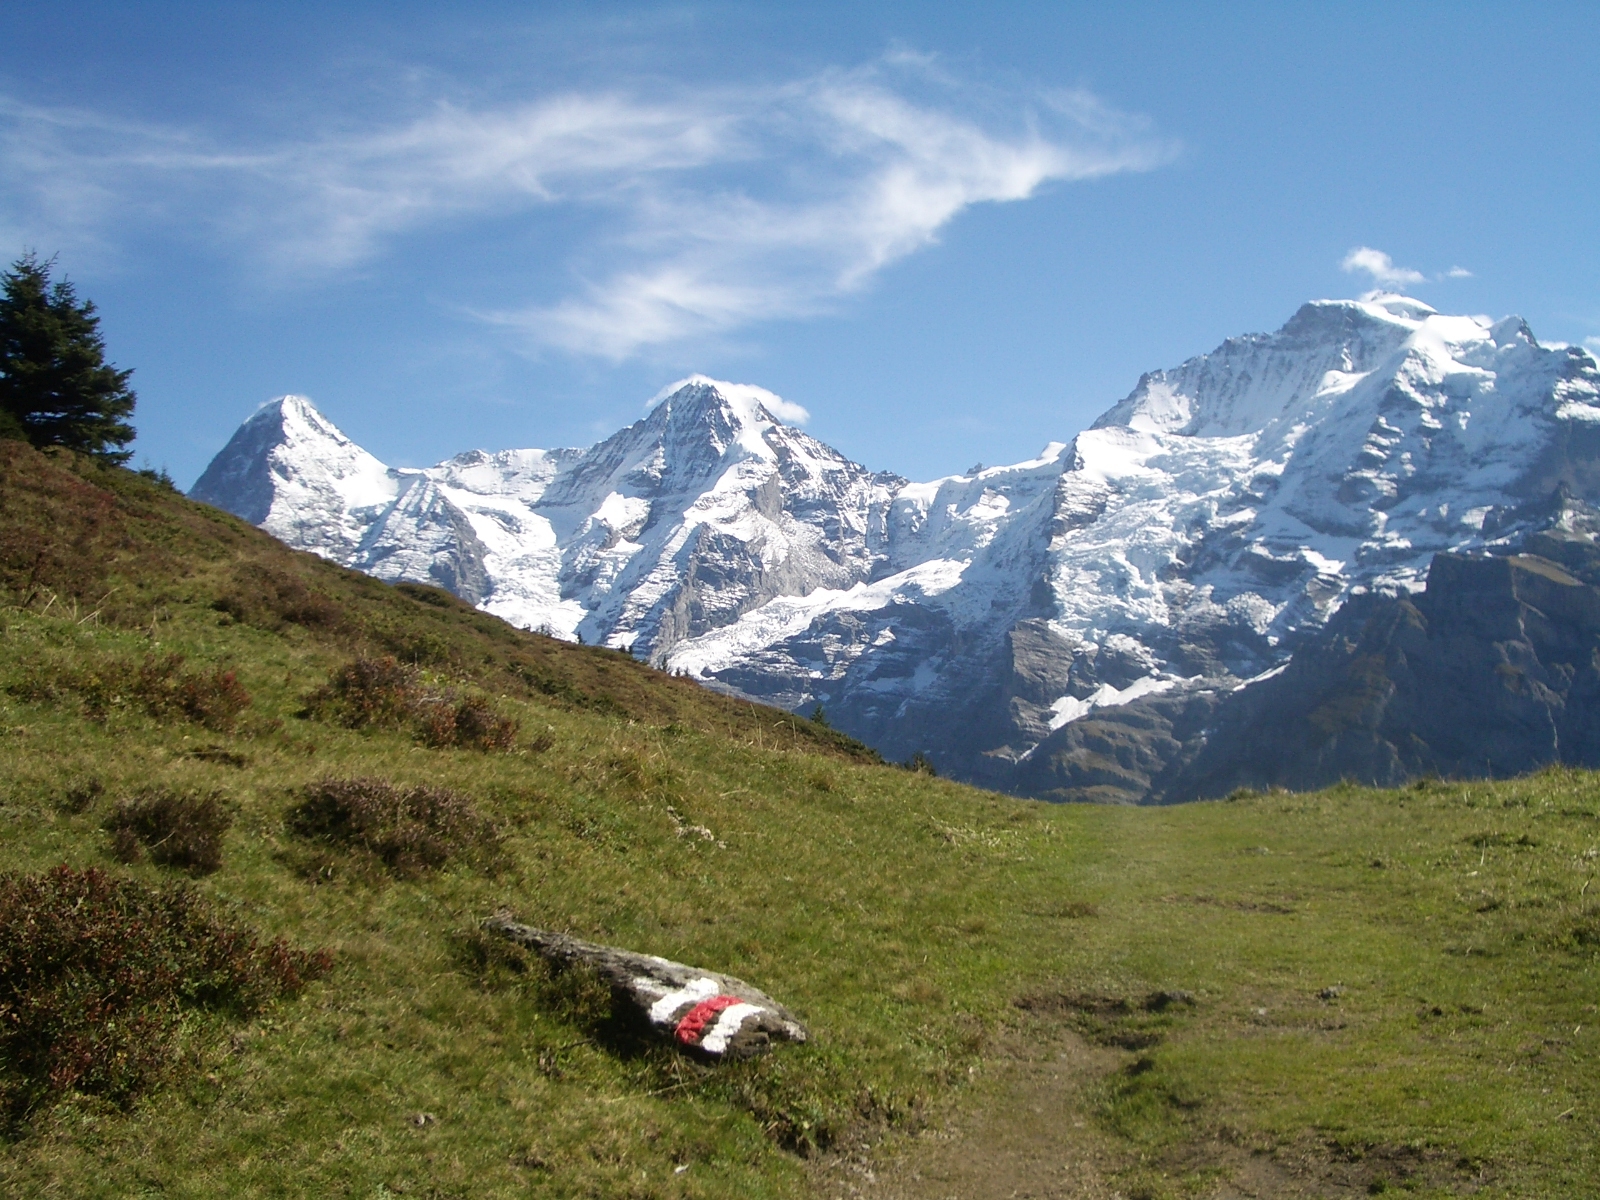 Wanderweg
                  Grütschalp - Allmendhubel - Mürren, mit Eiger, Mönch
                  und Jungfrau